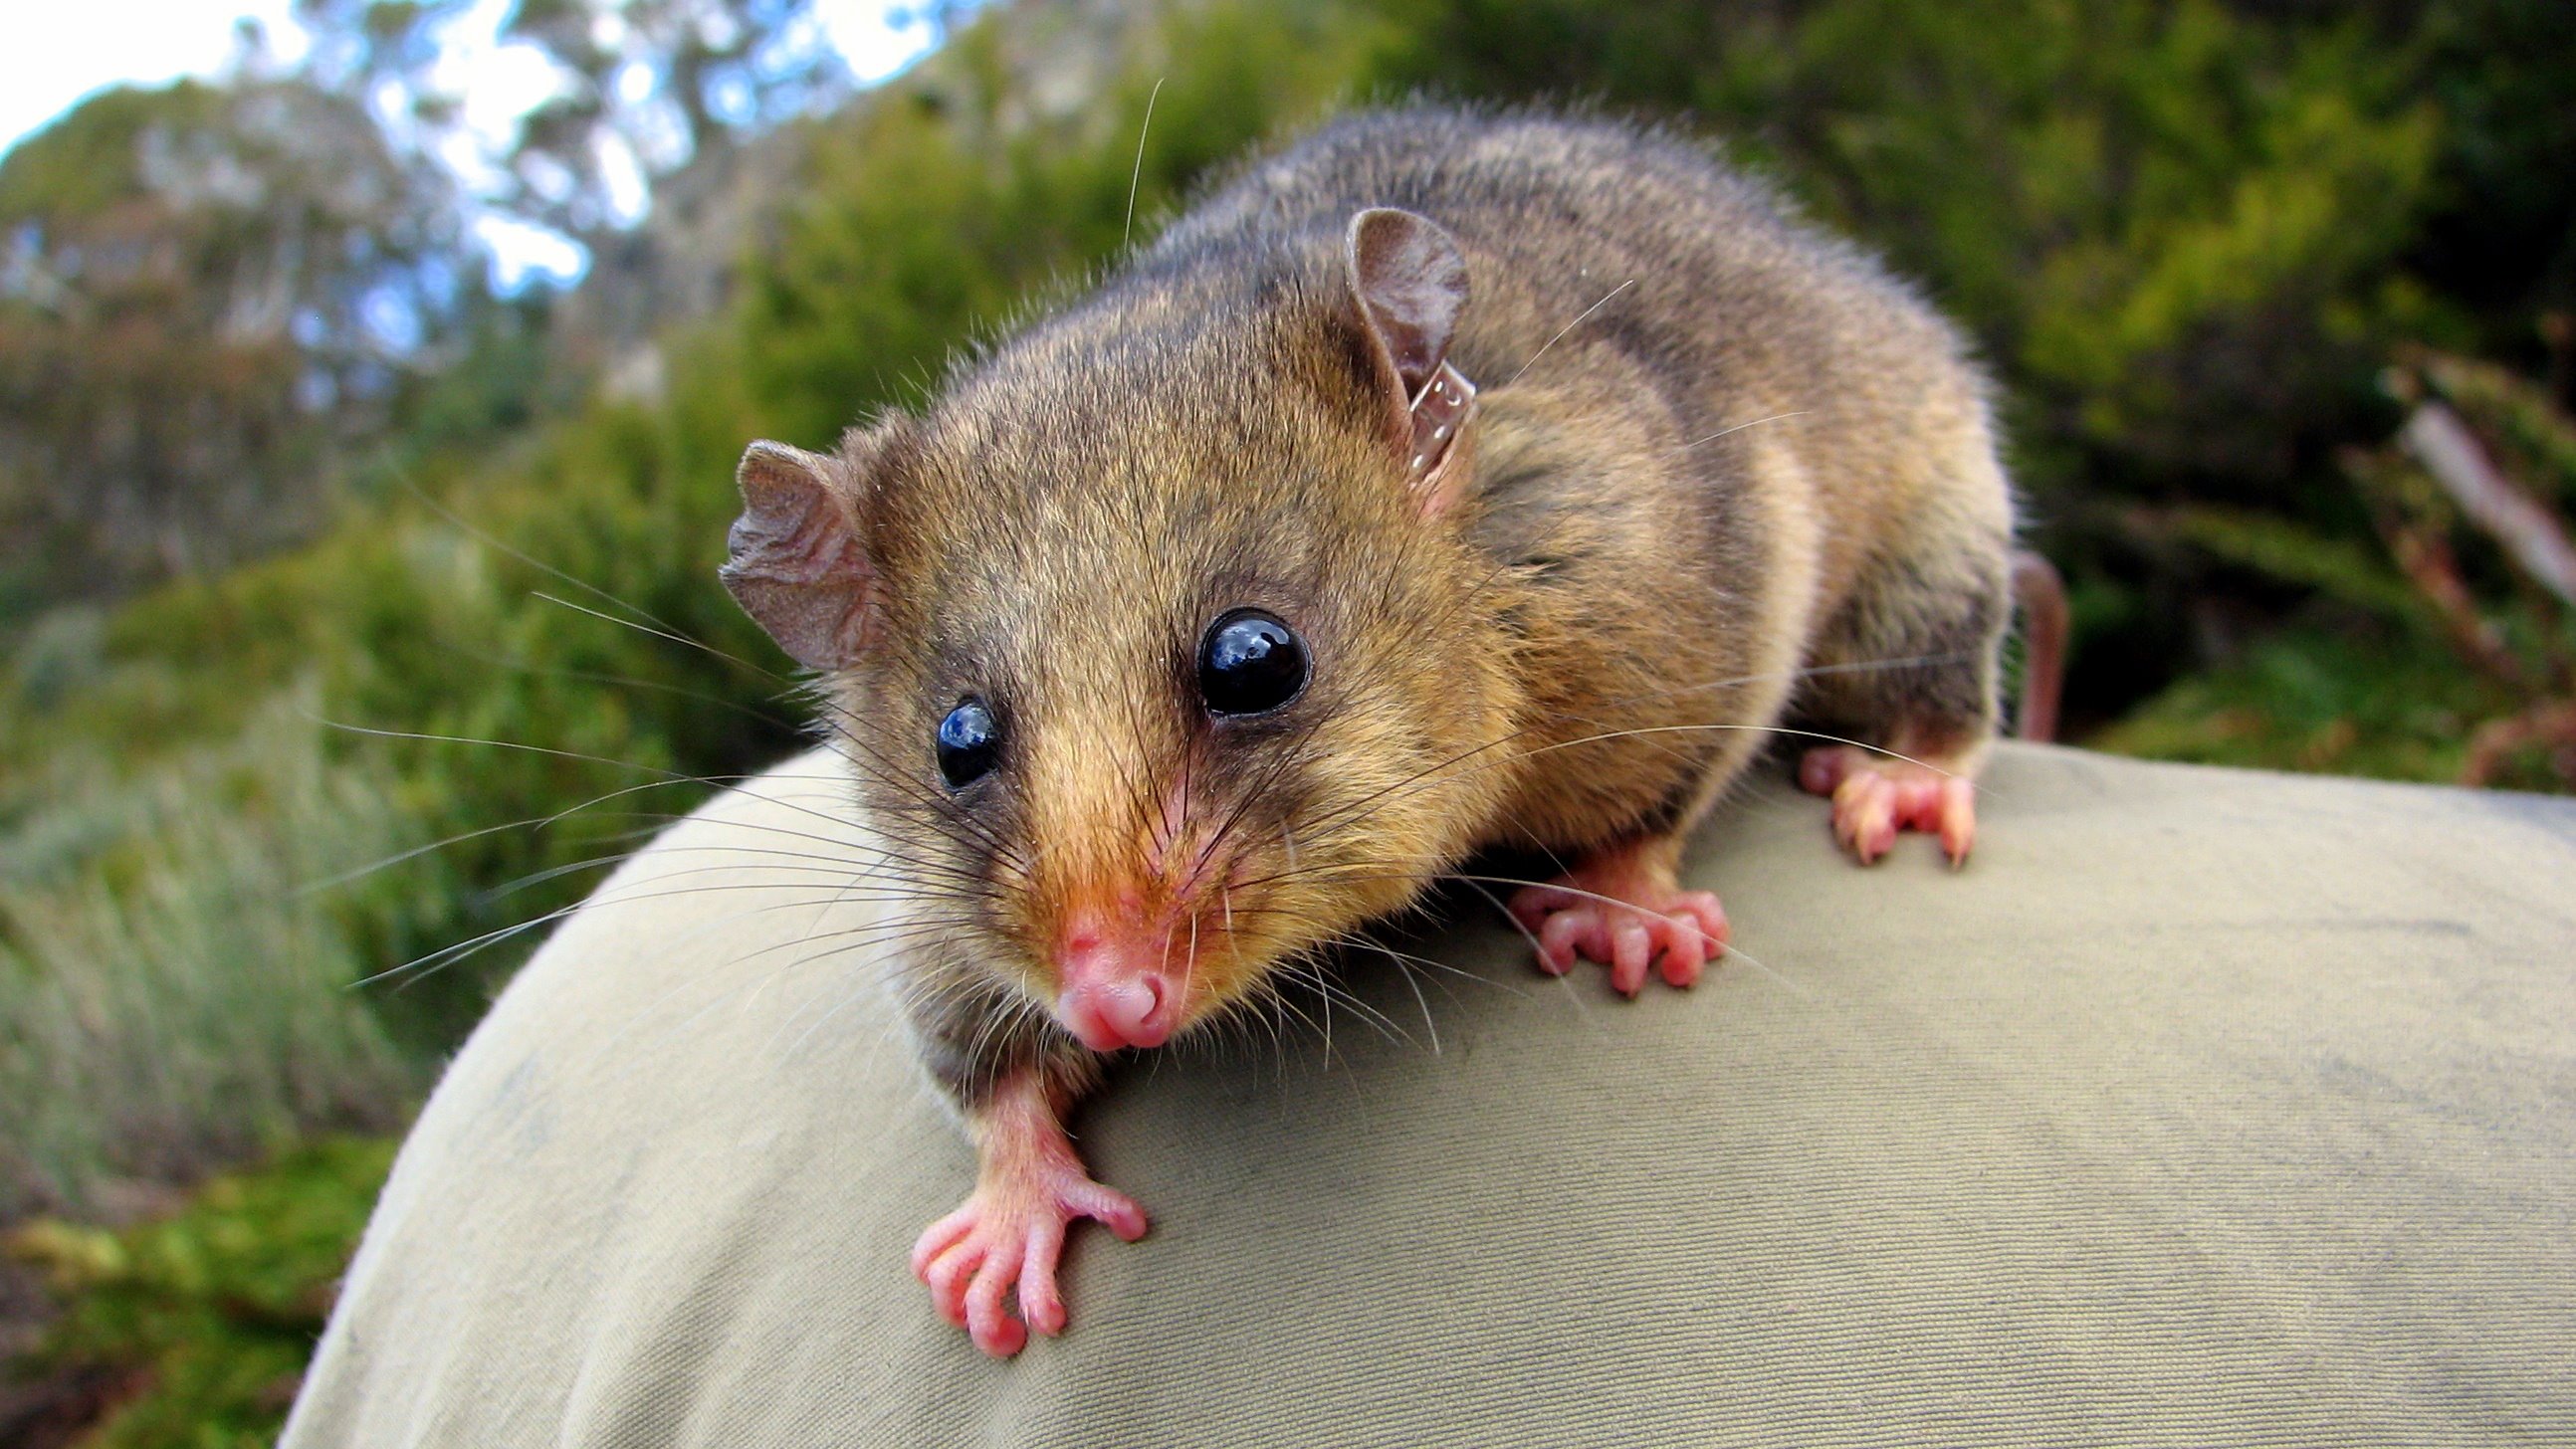 Mountain Pygmy Possum Australia Marsupial 2588x1456